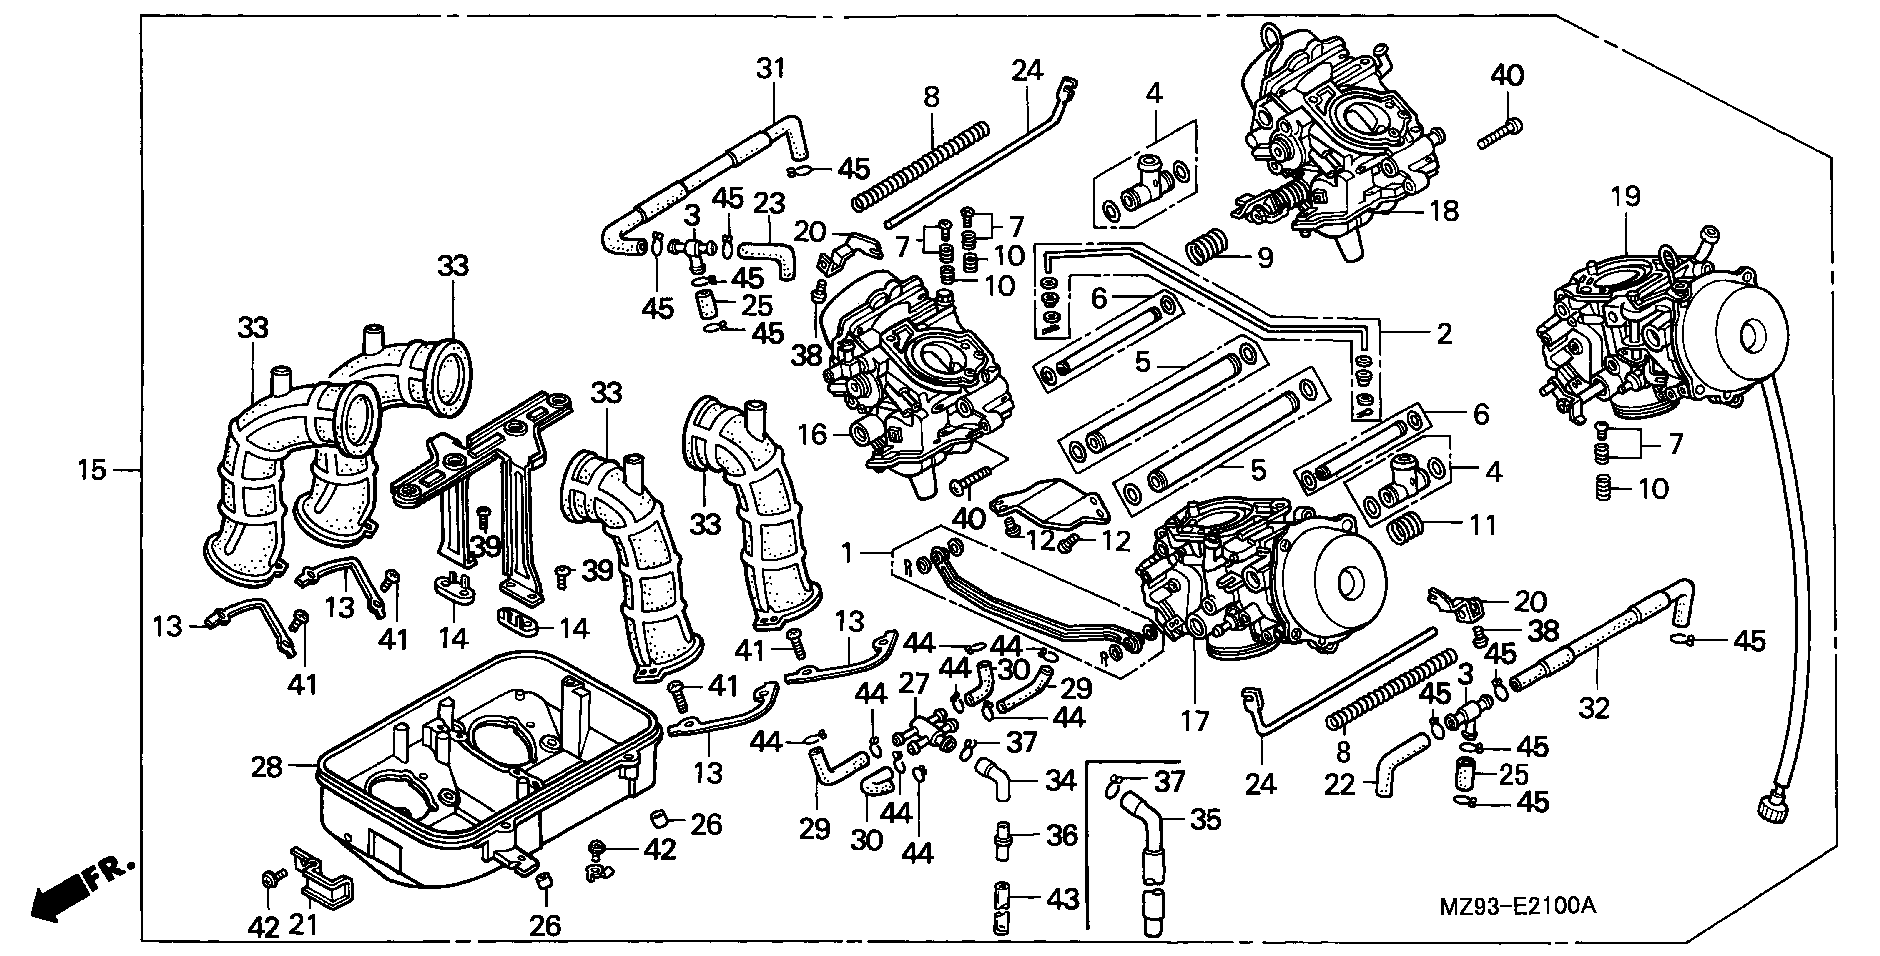 Parts fiche Carburettors ST1100